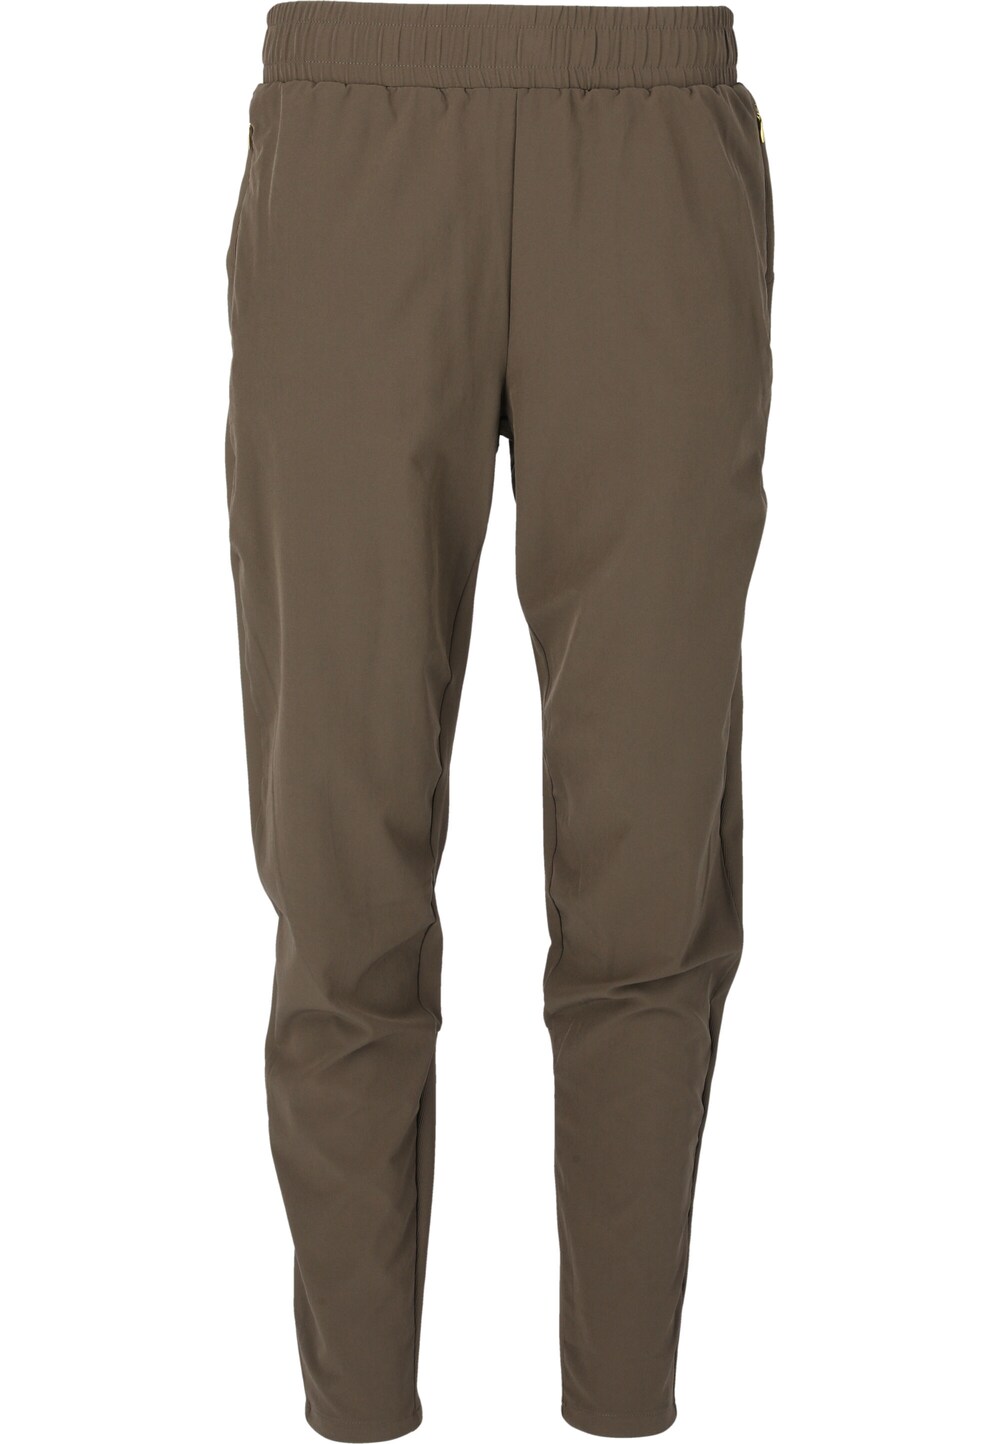 Обычные тренировочные брюки Athlecia Timmie, коричневый